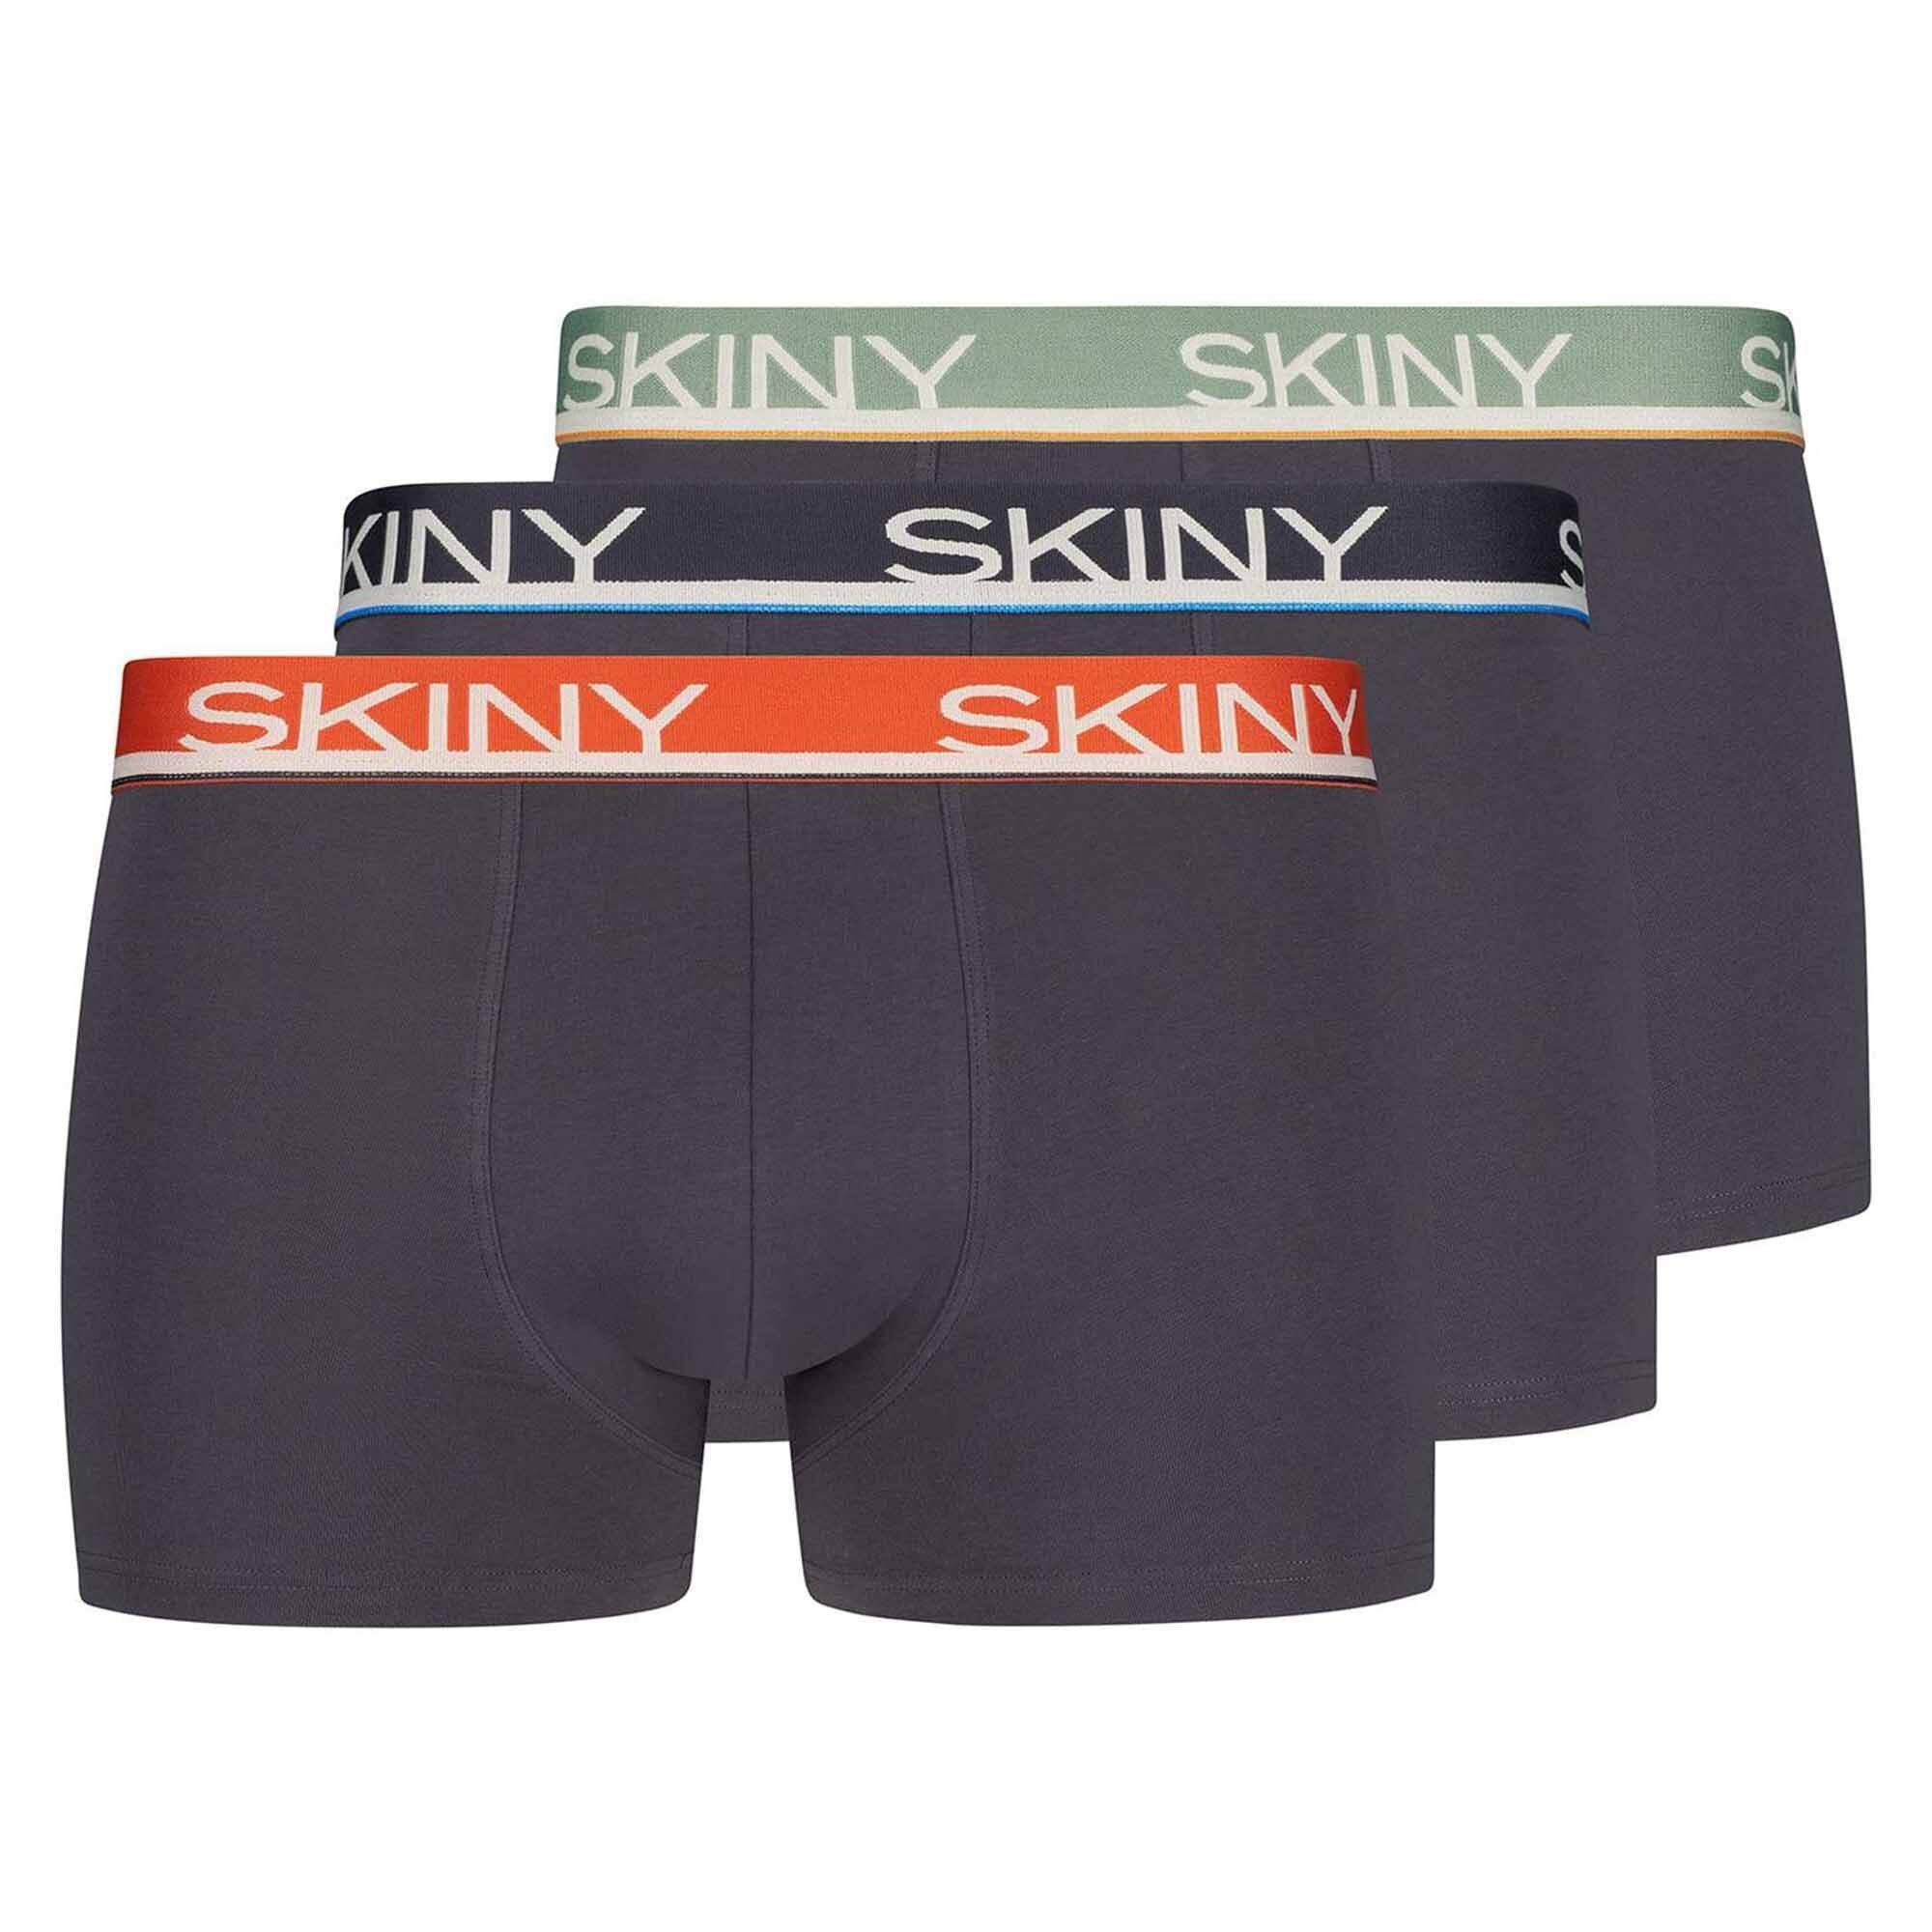 Skiny Boxer Herren Pants 3er Pack - Unterwäsche, Unterhose Grau/Orange/Grün